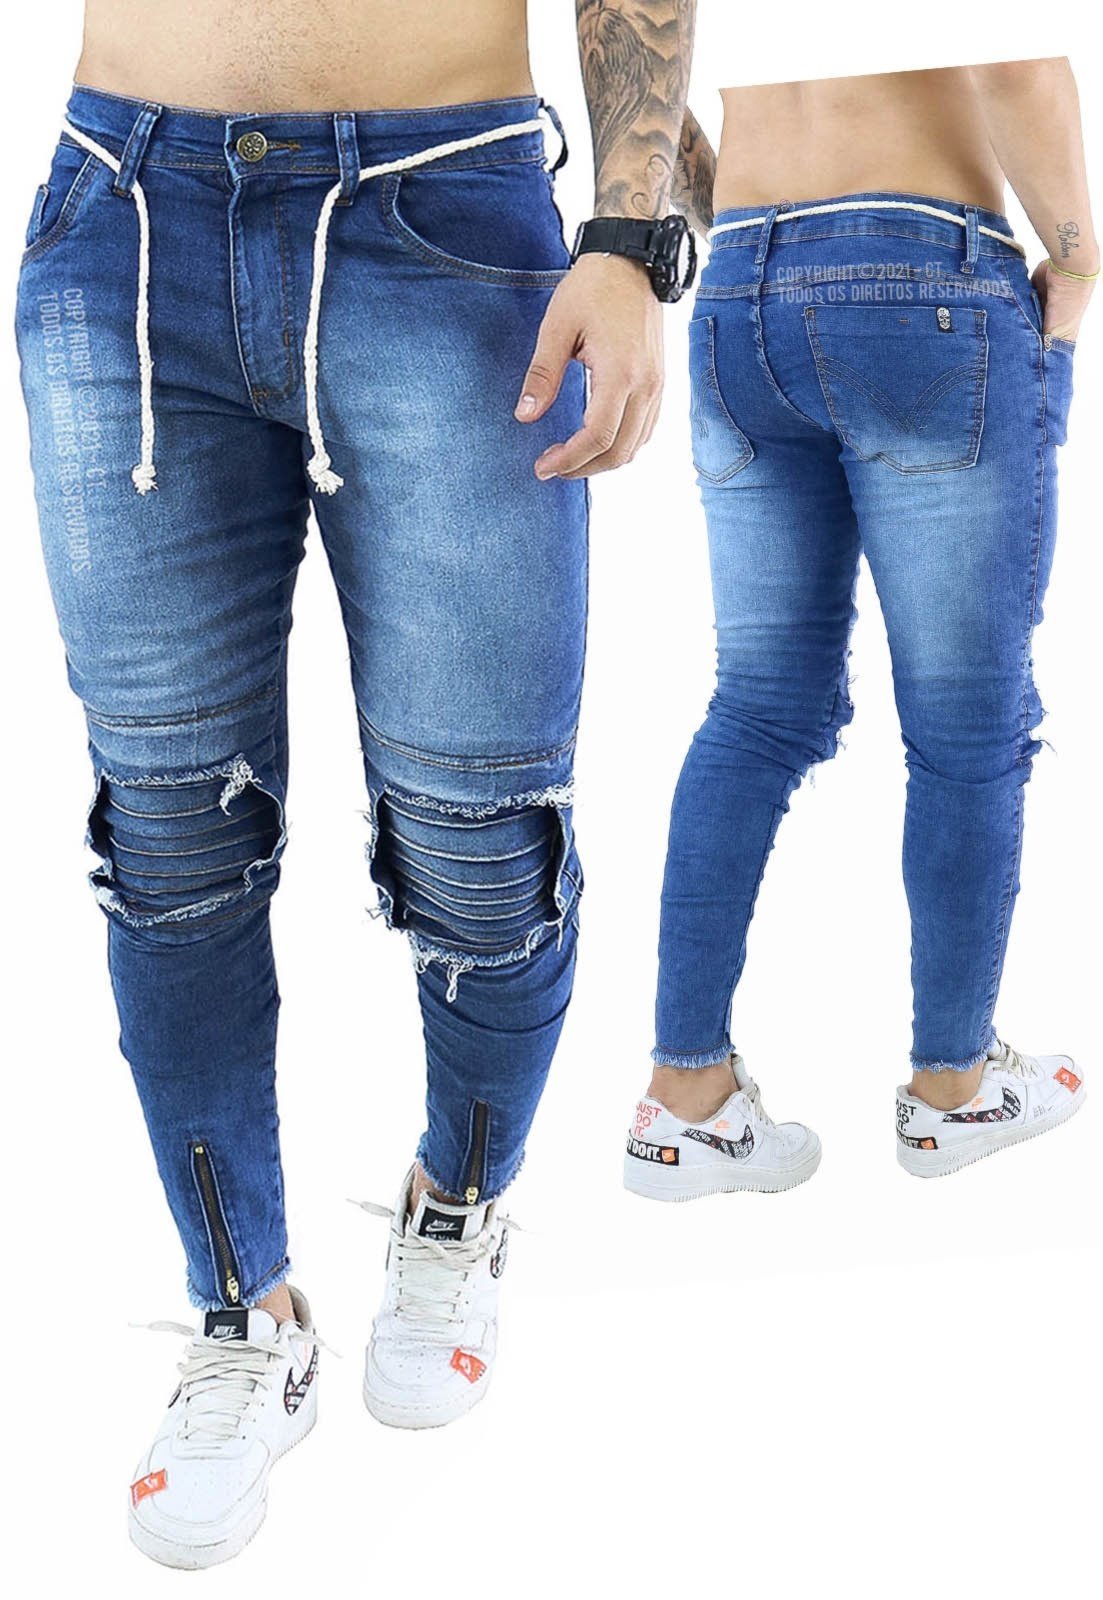 calça jeans com ziper na perna masculina